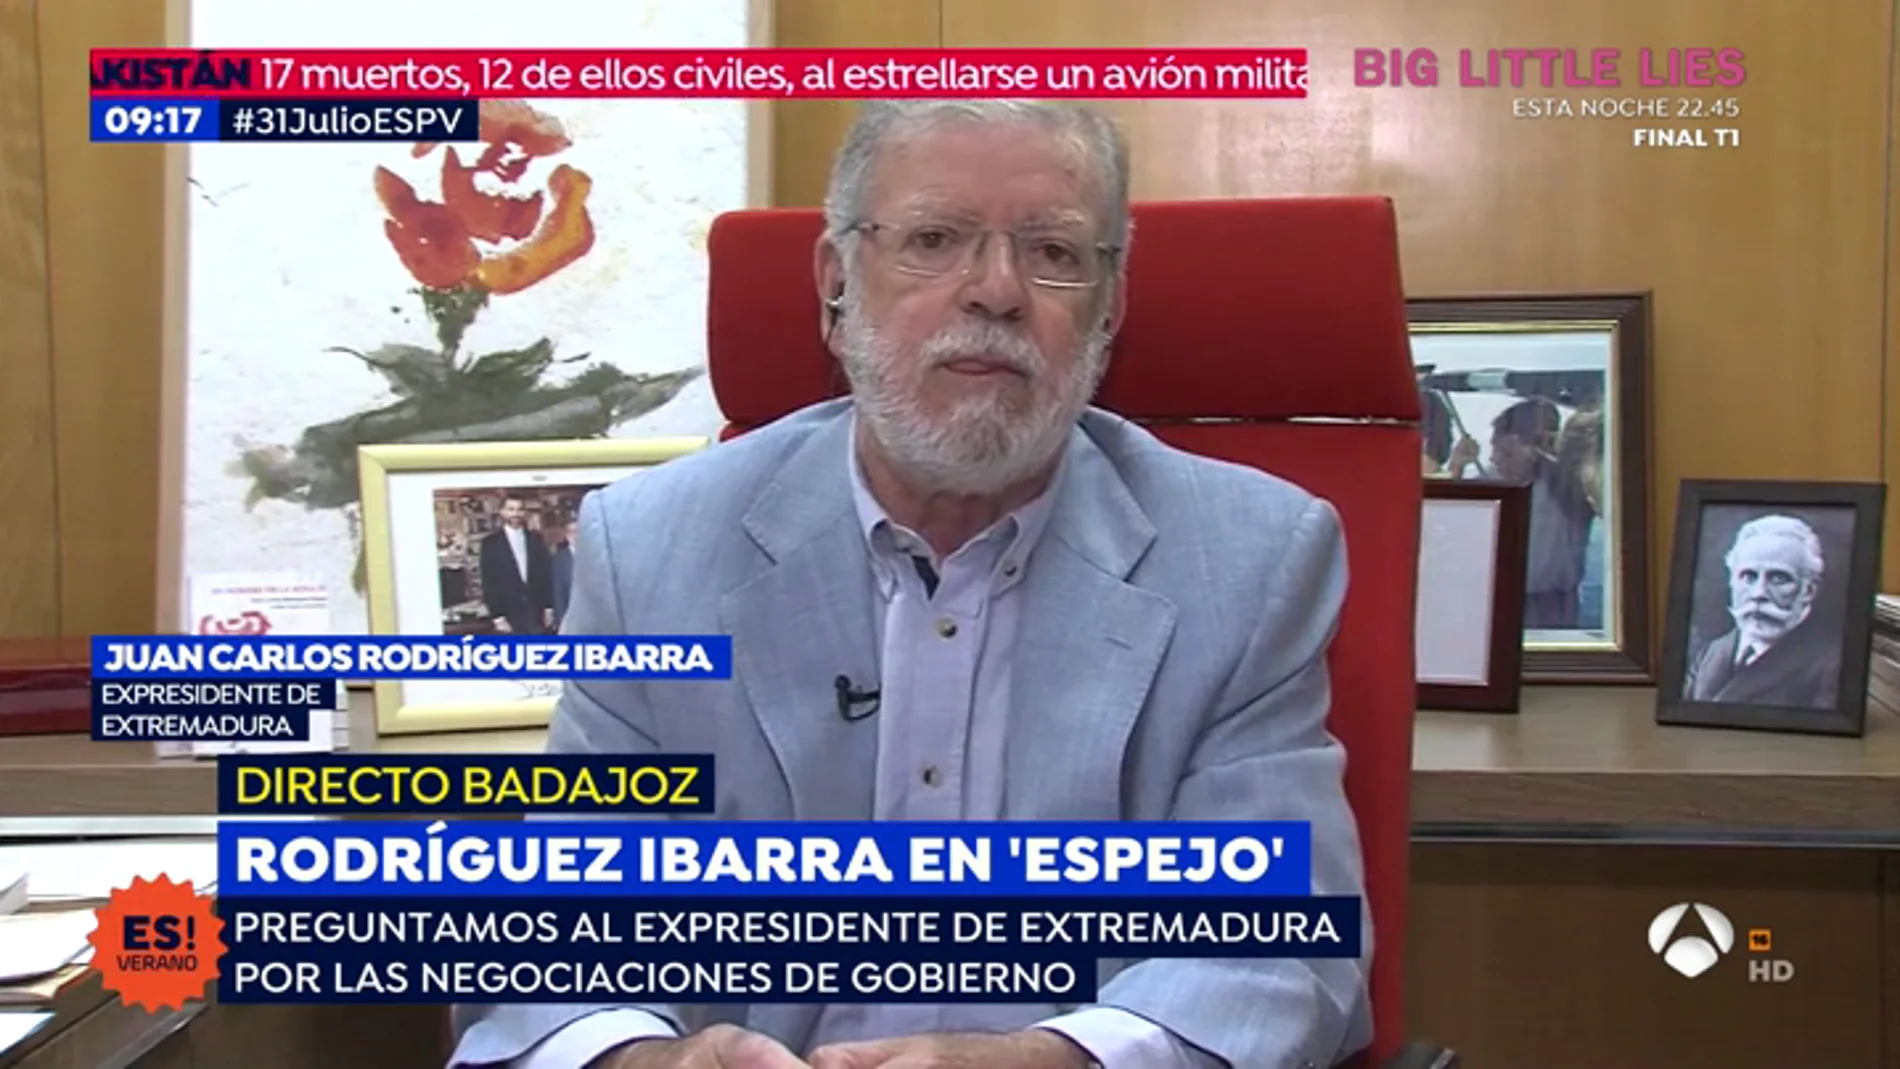 Rodríguez Ibarra: "Los trenes de Extremadura si funcionan pero se quedan sin gasolina, eso es un sabotaje"